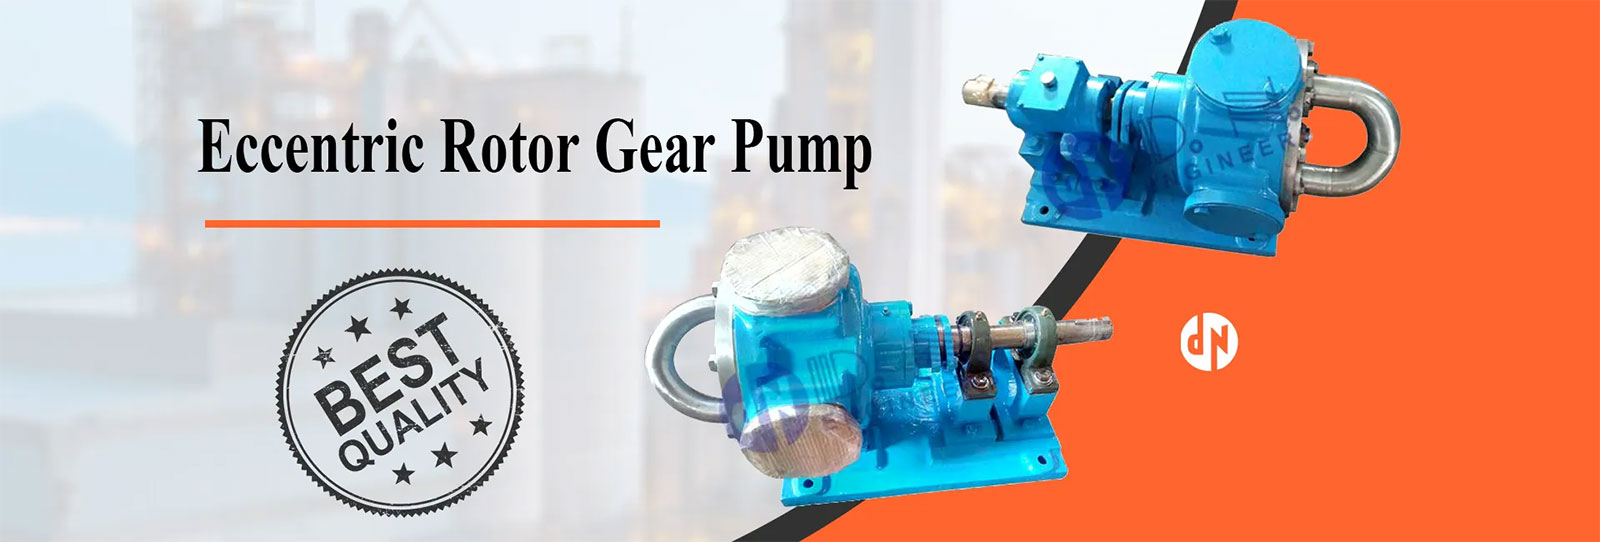 Pressure Pumps - Eccentric Rotor Gear Pump